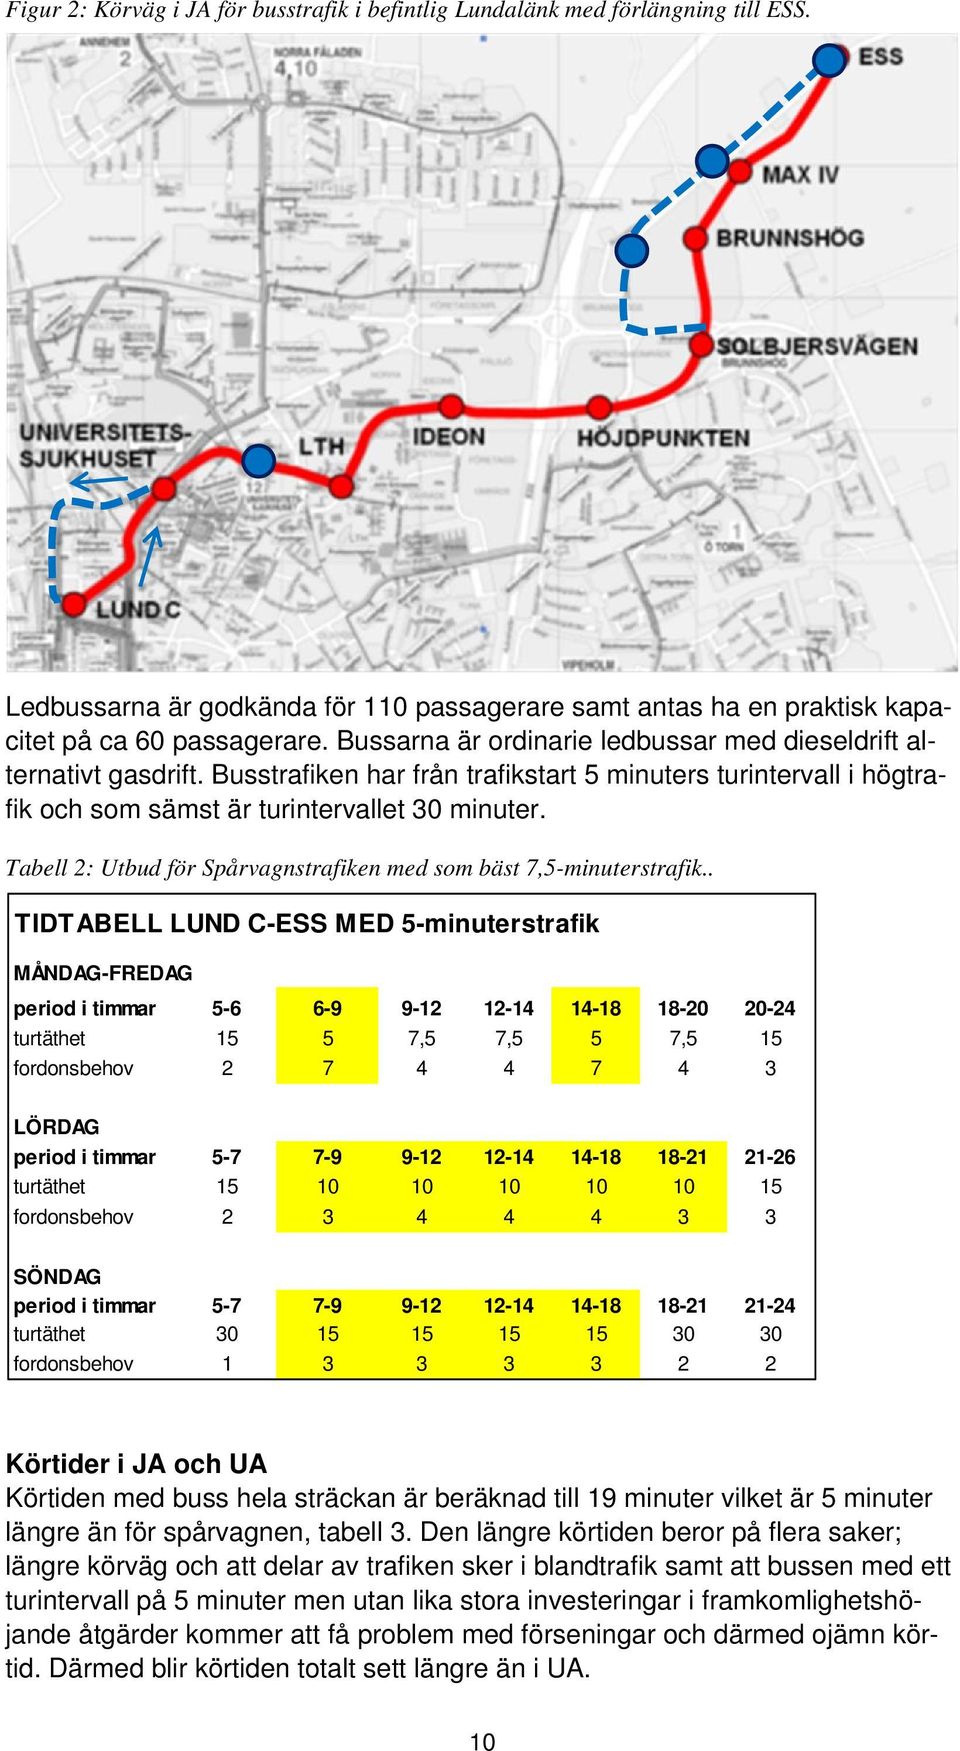 Tabell 2: Utbud för Spårvagnstrafiken med som bäst 7,5-minuterstrafik.